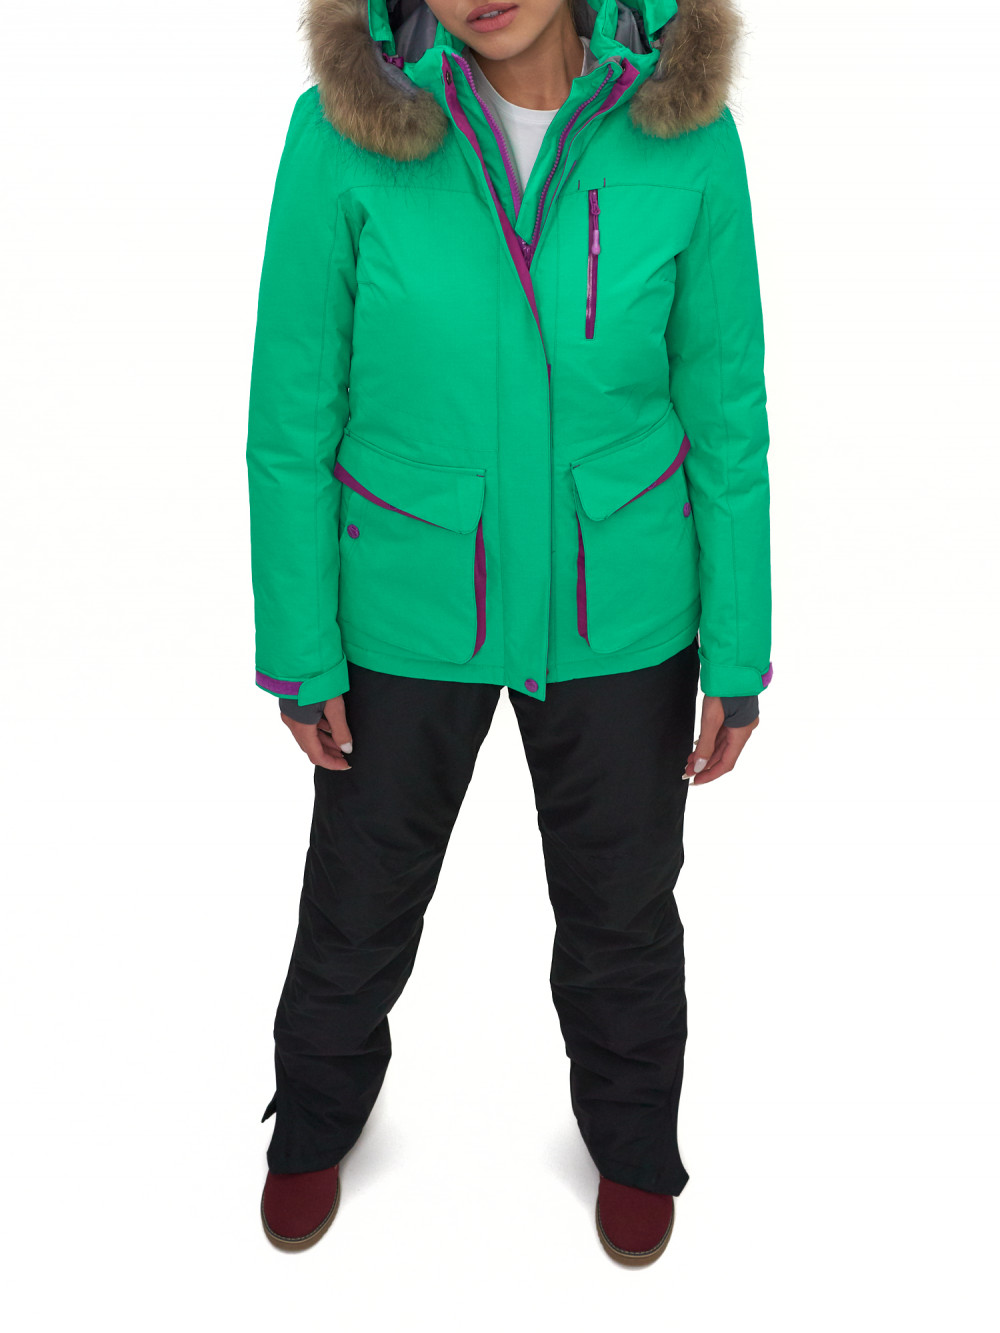 Спортивная куртка женская SkiingBird AD551777 зеленая XL